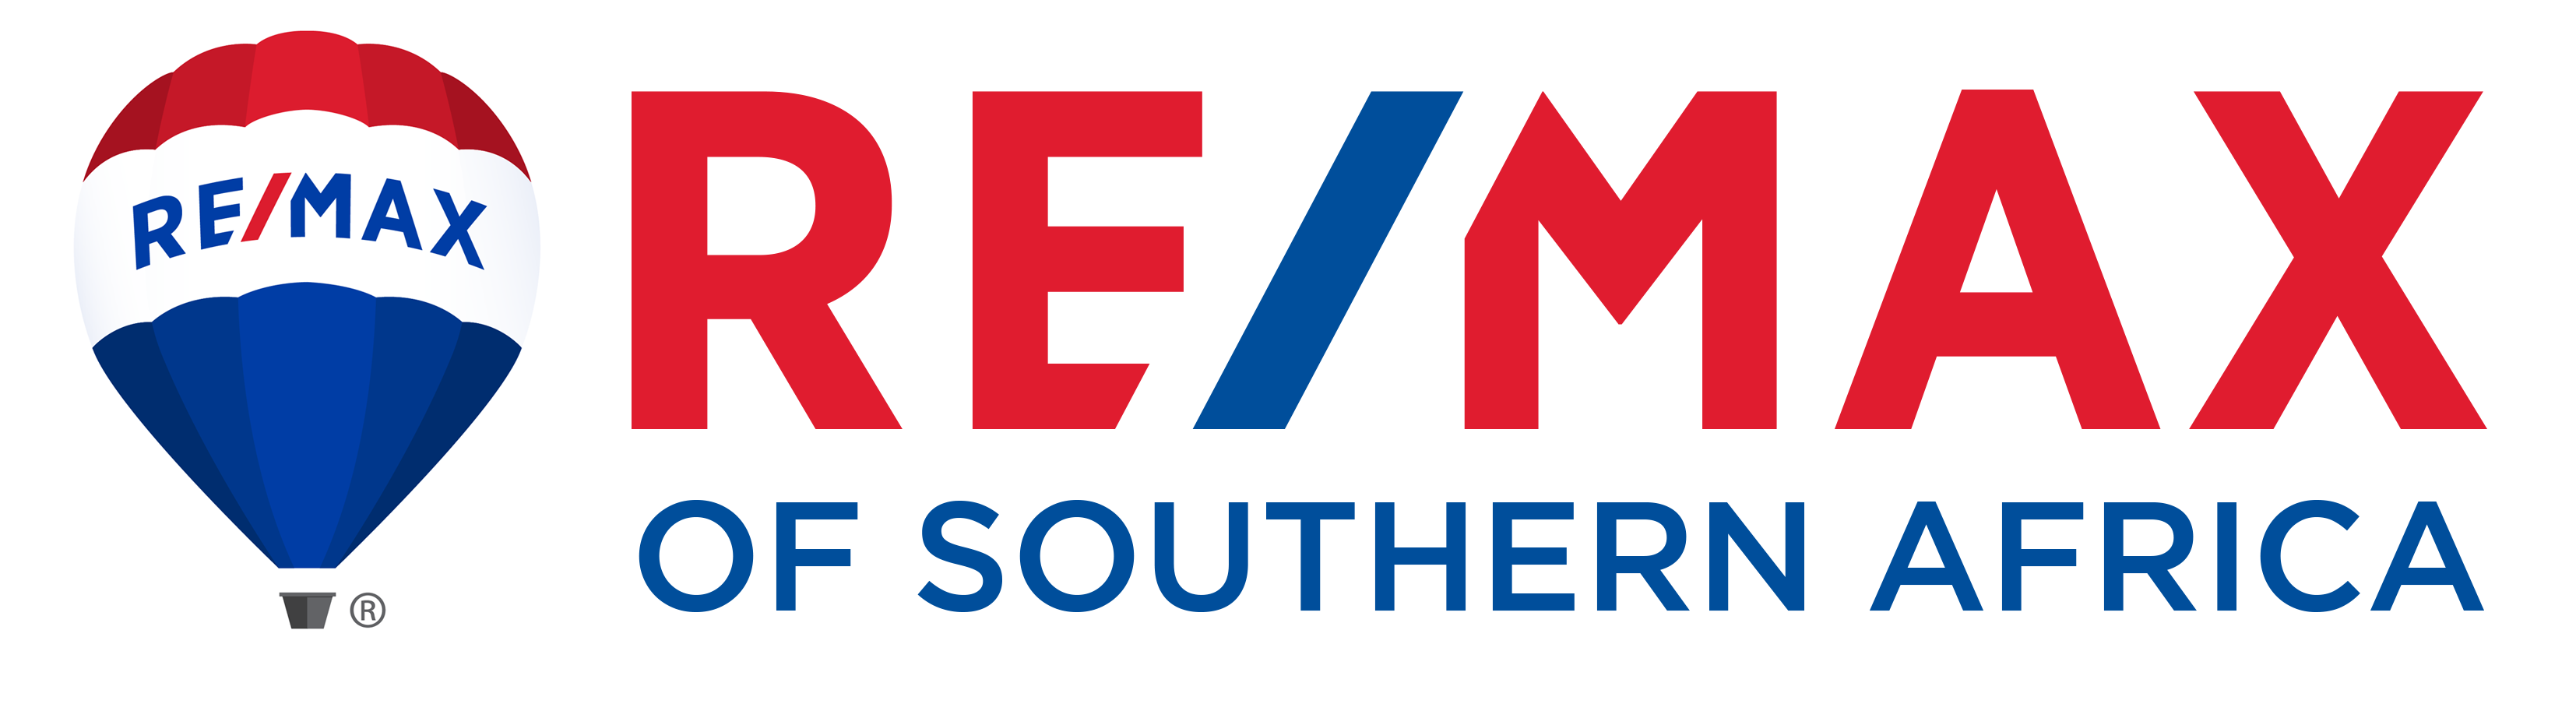 RE/MAX SA logo